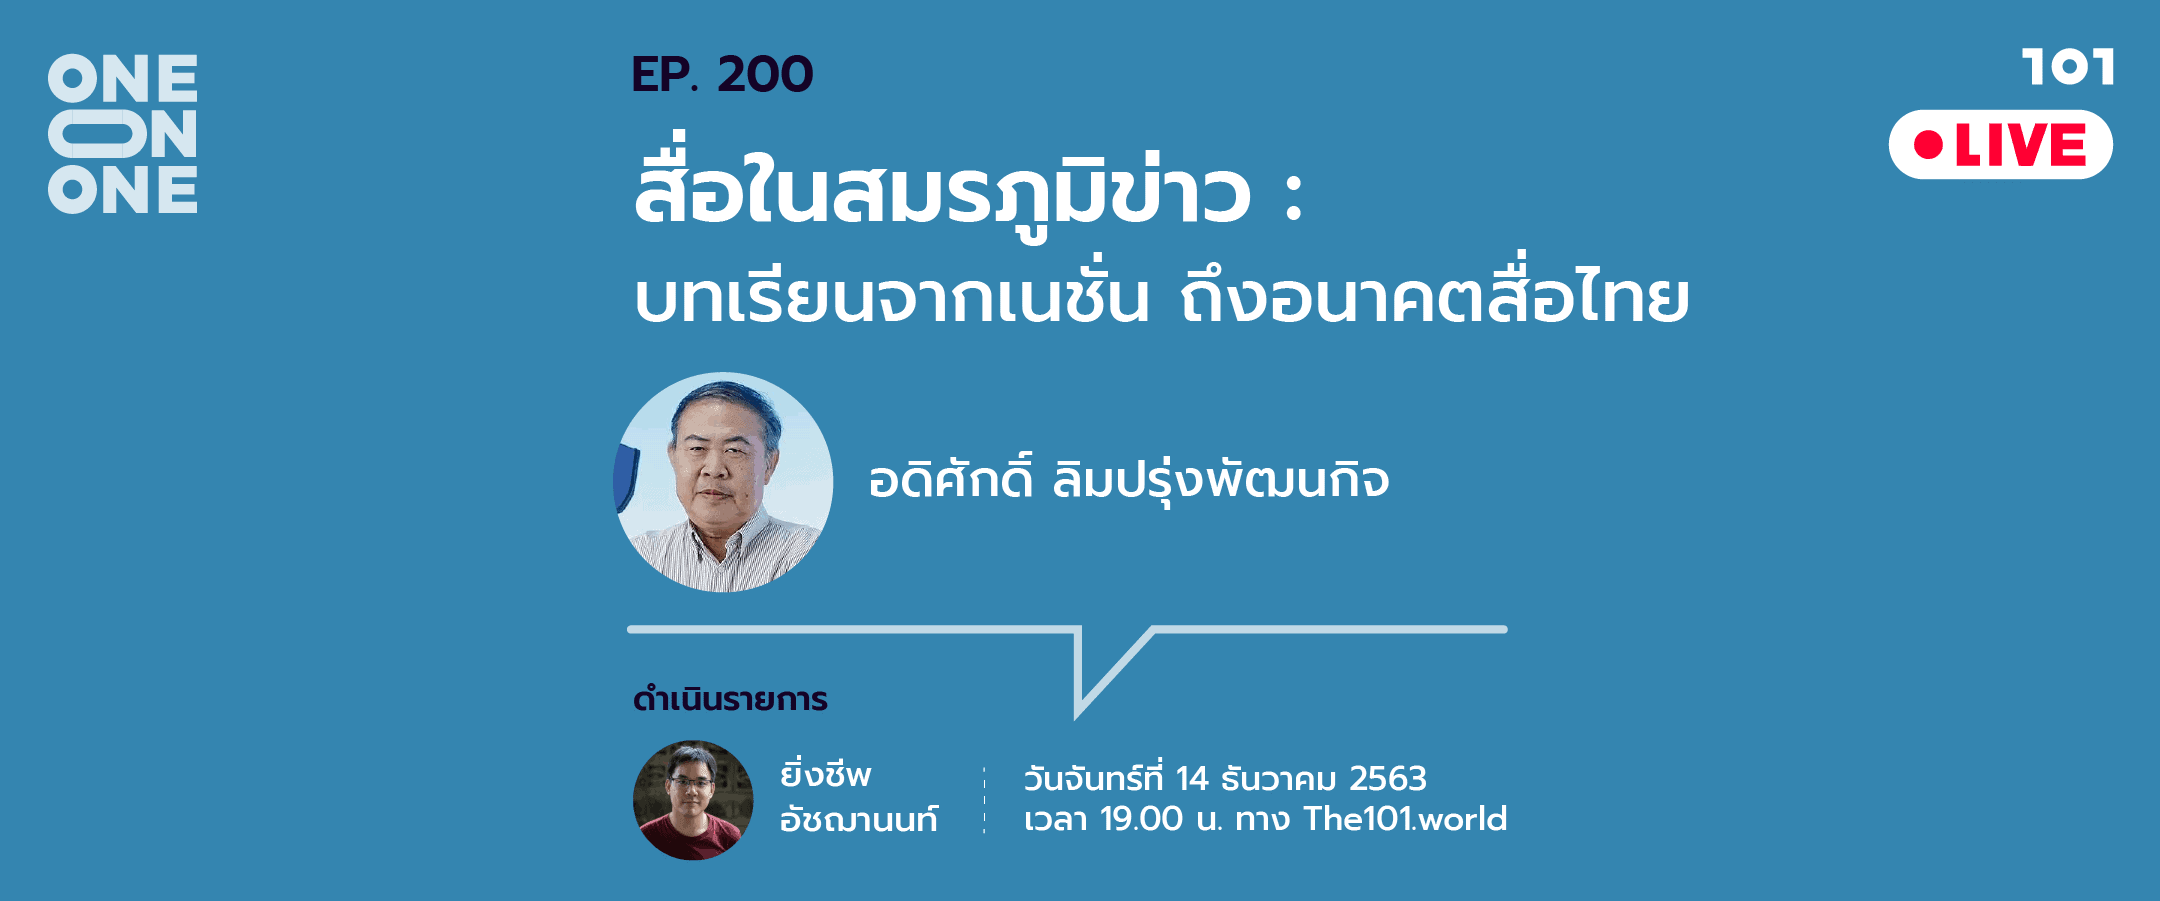 101 One-on-One EP.200 "สื่อในสมรภูมิข่าว: บทเรียนจากเนชั่น ถึงอนาคตสื่อไทย" - อดิศักดิ์ ลิมปรุ่งพัฒนกิจ